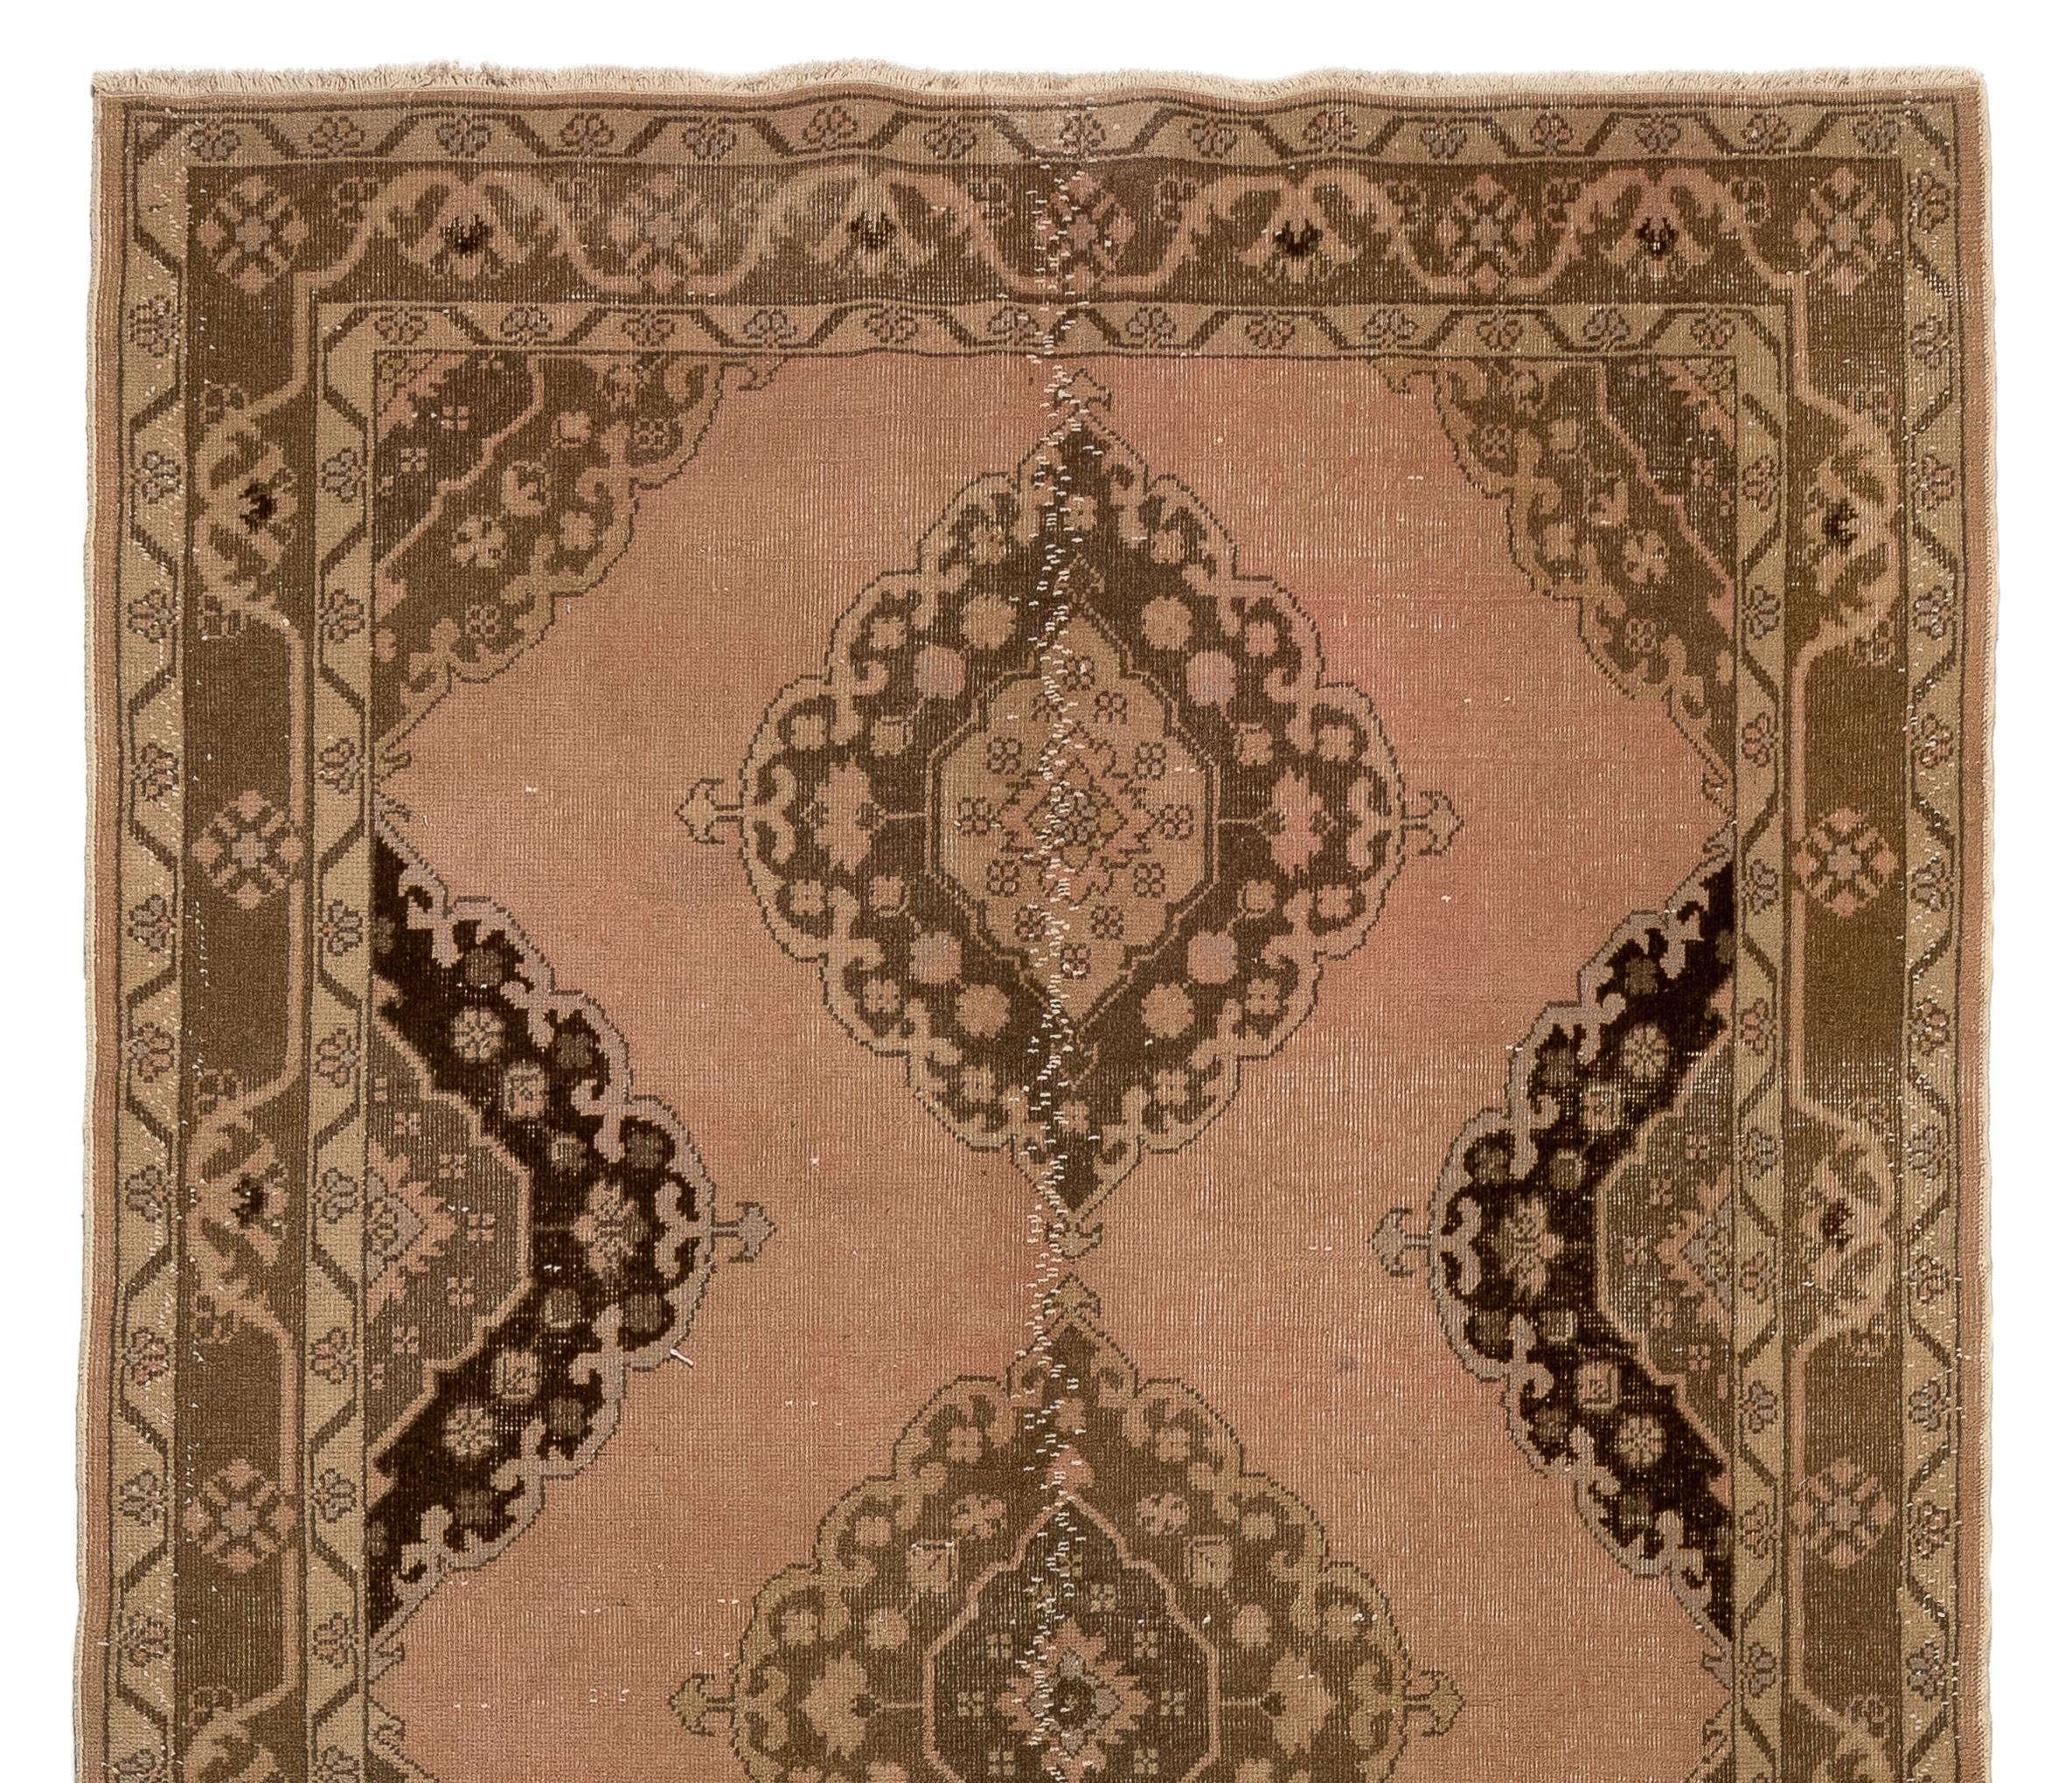 Un tapis de course turc vintage qui a été noué à la main dans les années 1960 avec de la laine basse sur une base de coton. Il présente de multiples médaillons reliés entre eux, de couleur marron et sable, sur un fond rose corail délavé. Il est en